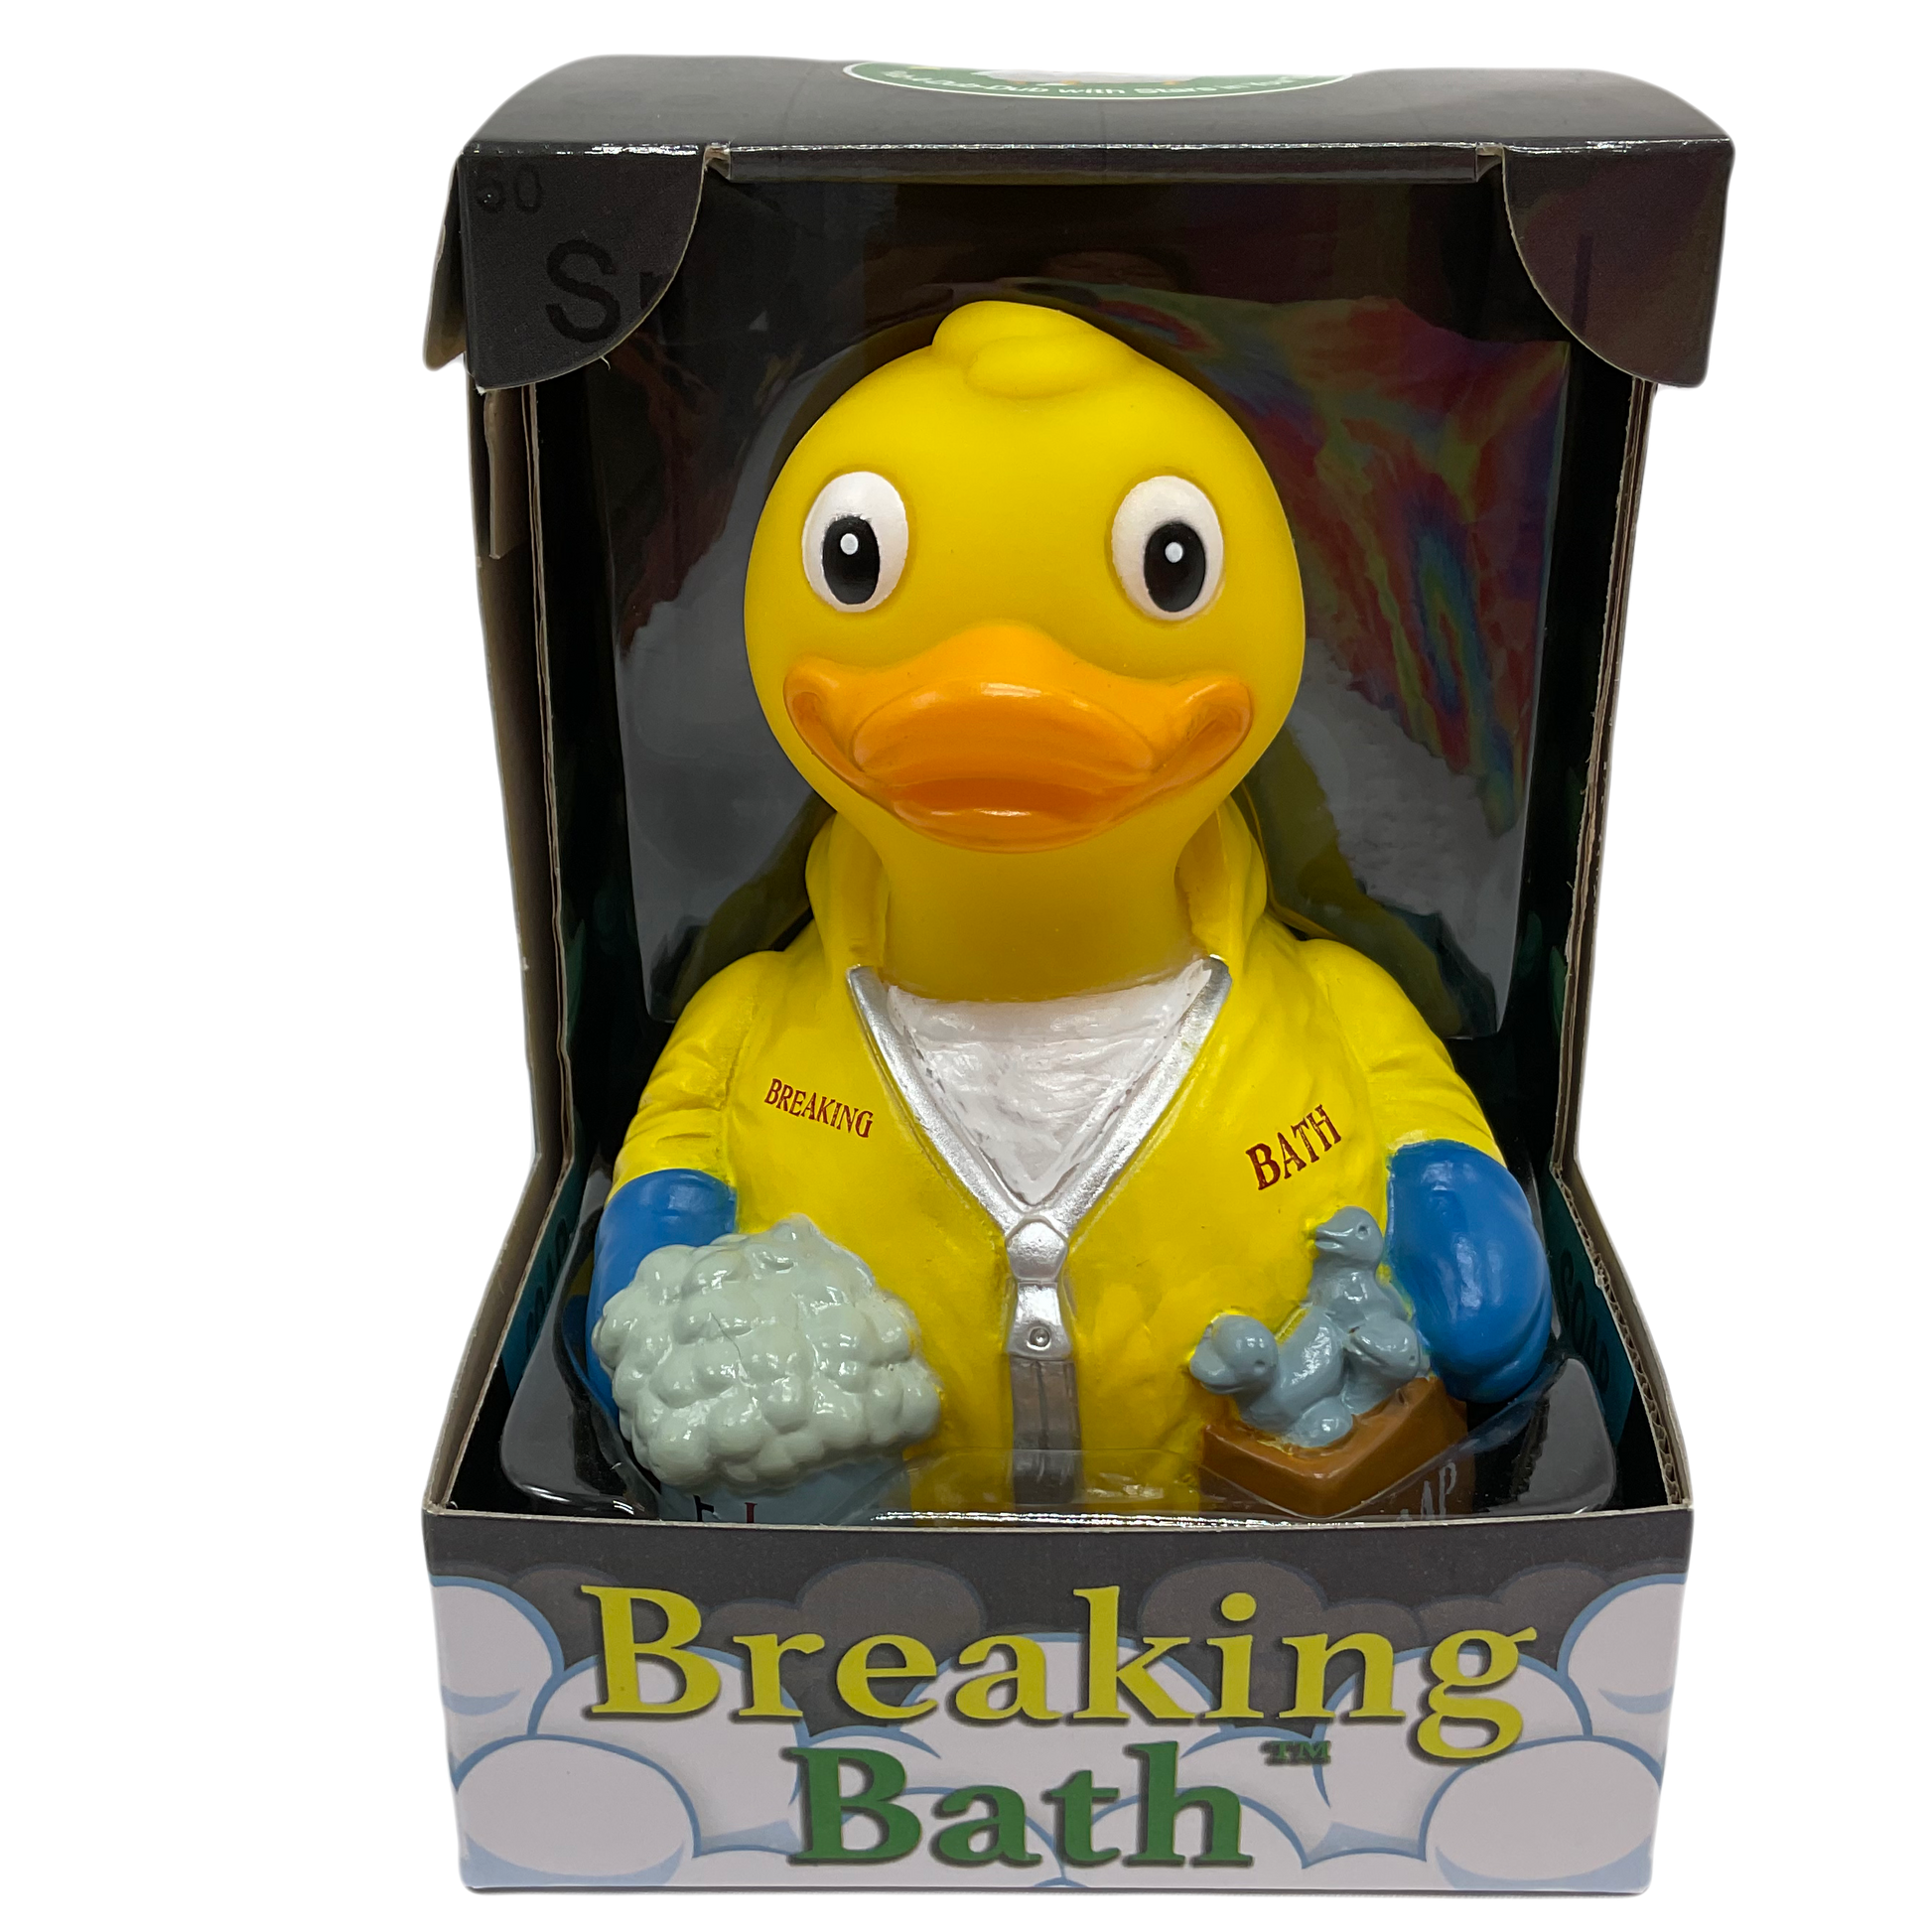 Breaking Bath Breaking Bad Celebriduck Rubber Duck